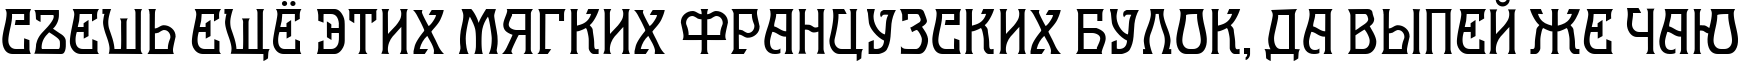 Пример написания шрифтом Melange Nouveau Normal текста на русском